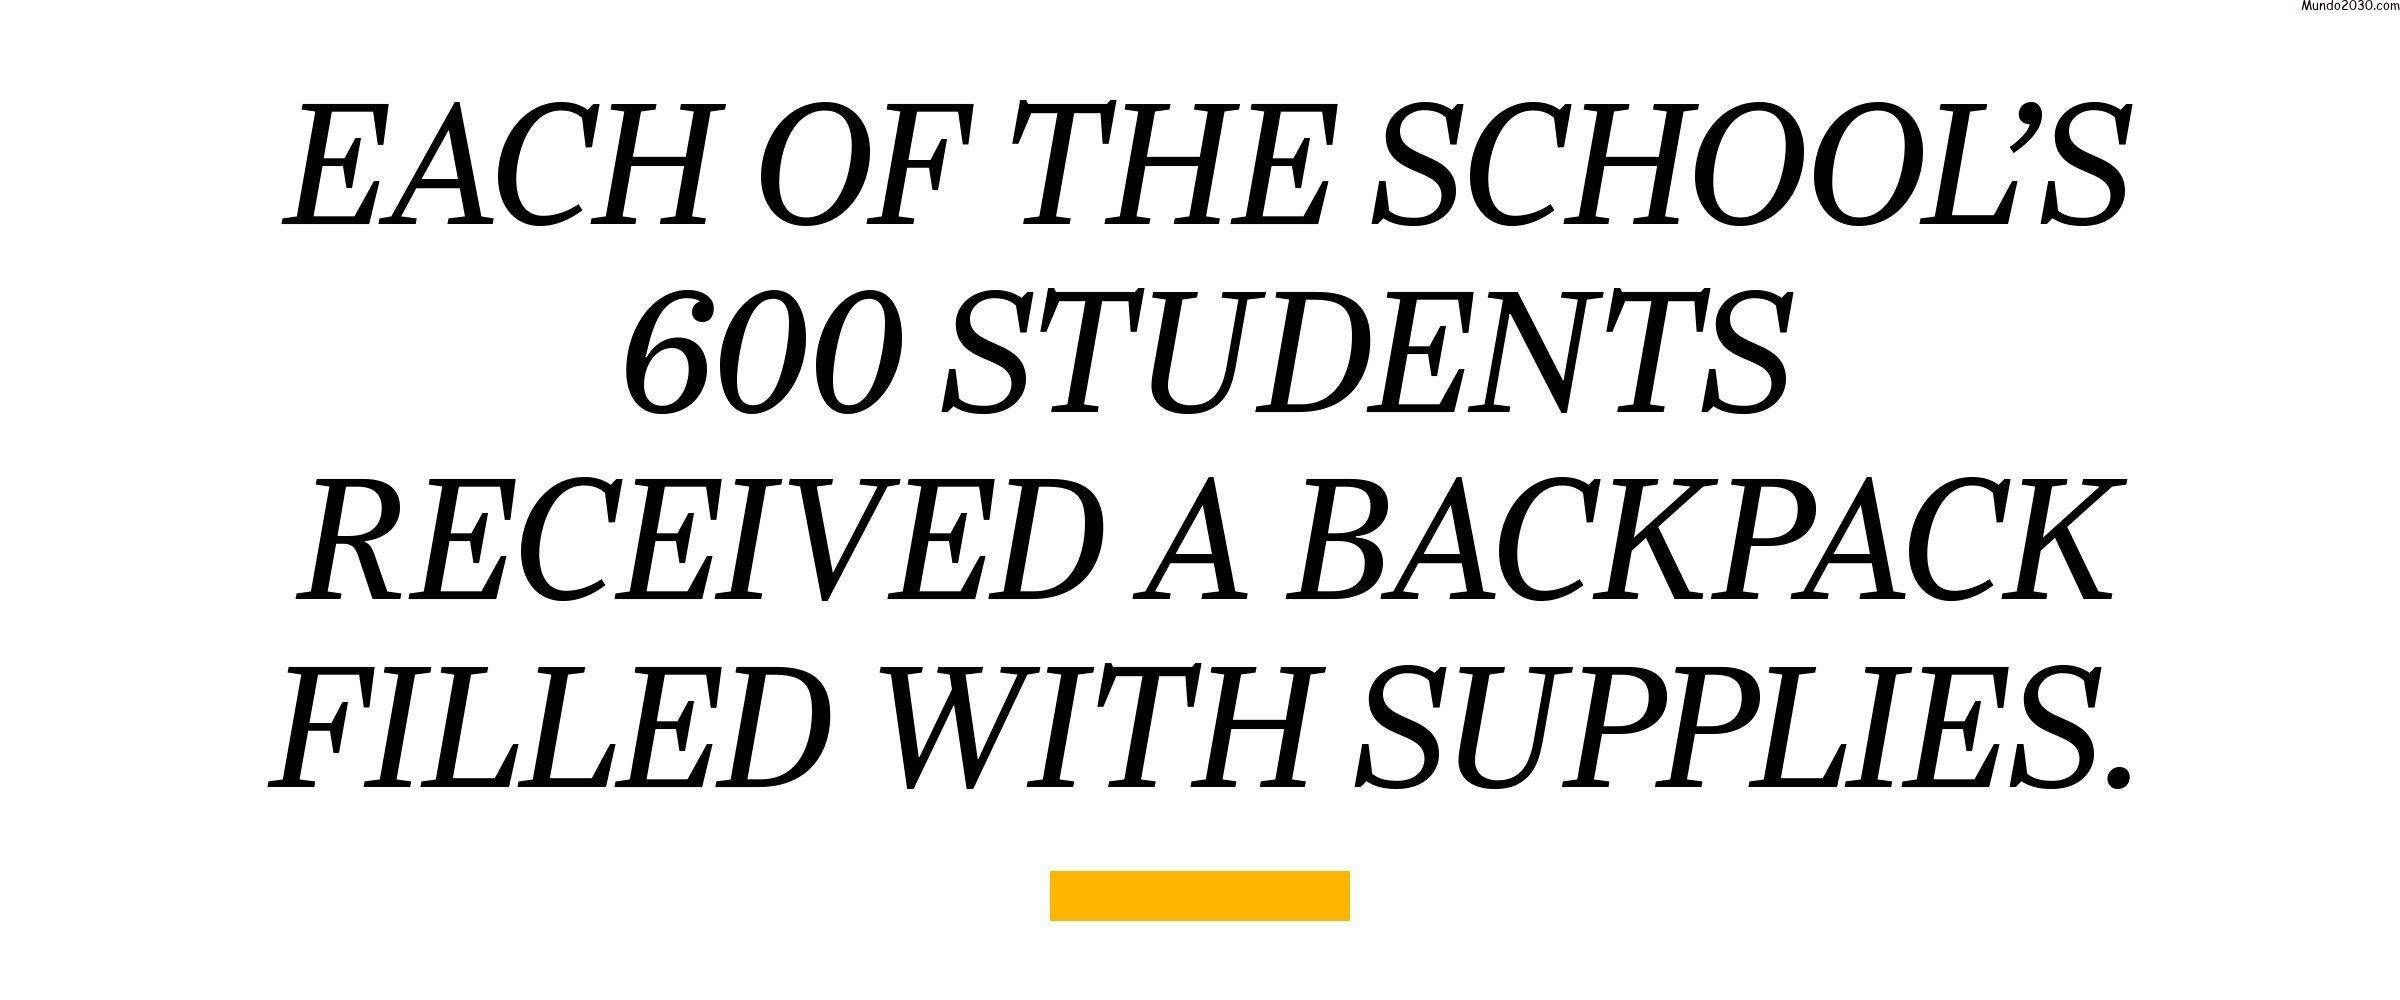 PULL CITA: Cada uno de los 600 estudiantes de la escuela recibió una mochila llena de útiles.